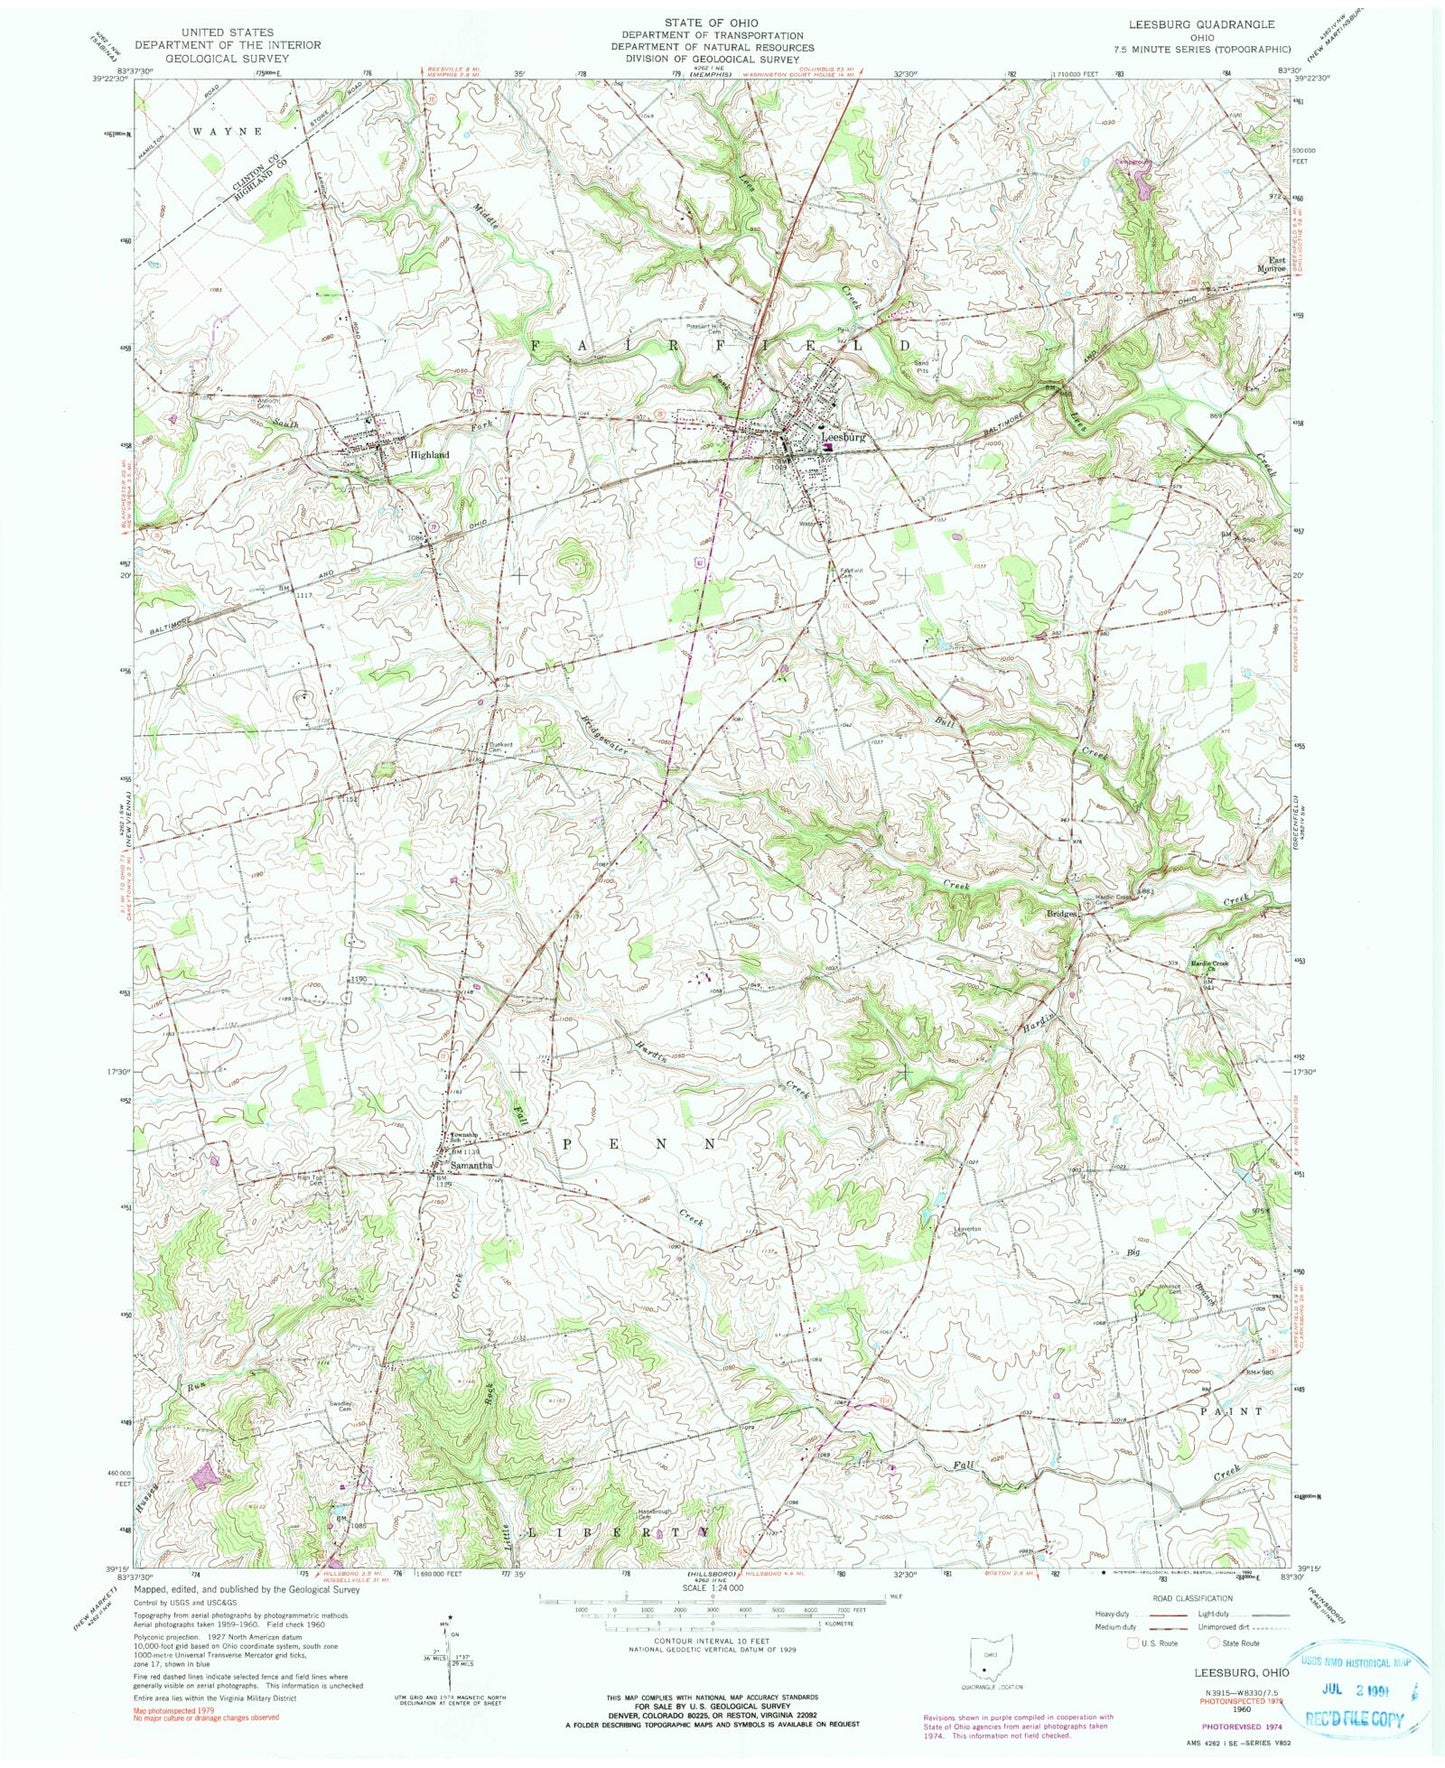 Classic USGS Leesburg Ohio 7.5'x7.5' Topo Map Image